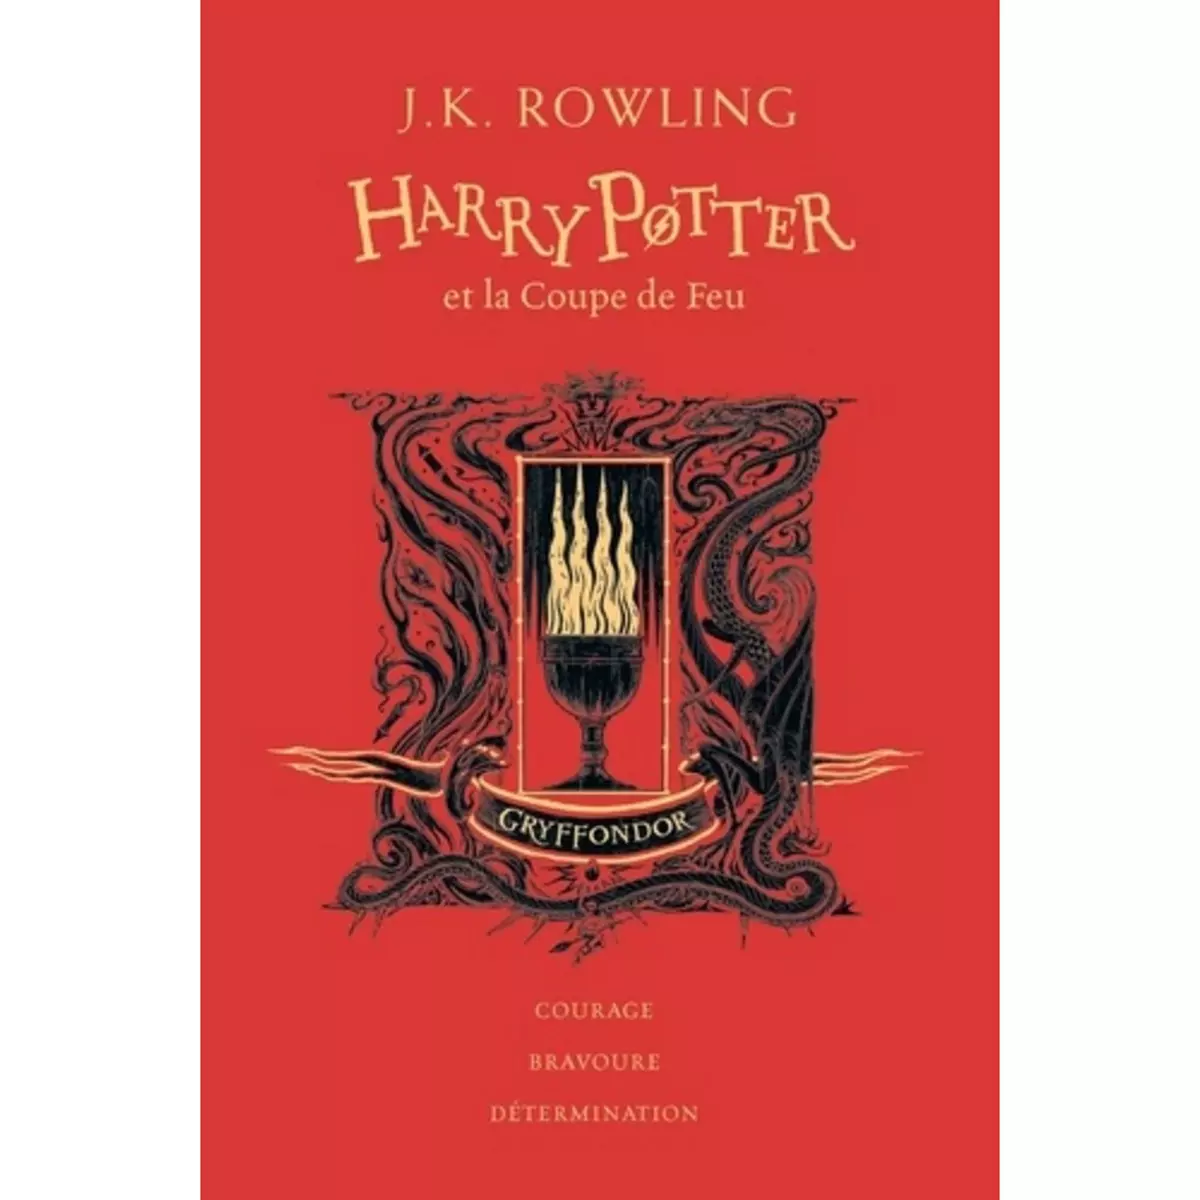  HARRY POTTER TOME 4 : HARRY POTTER ET LA COUPE DE FEU (GRYFFONDOR). EDITION COLLECTOR, Rowling J.K.